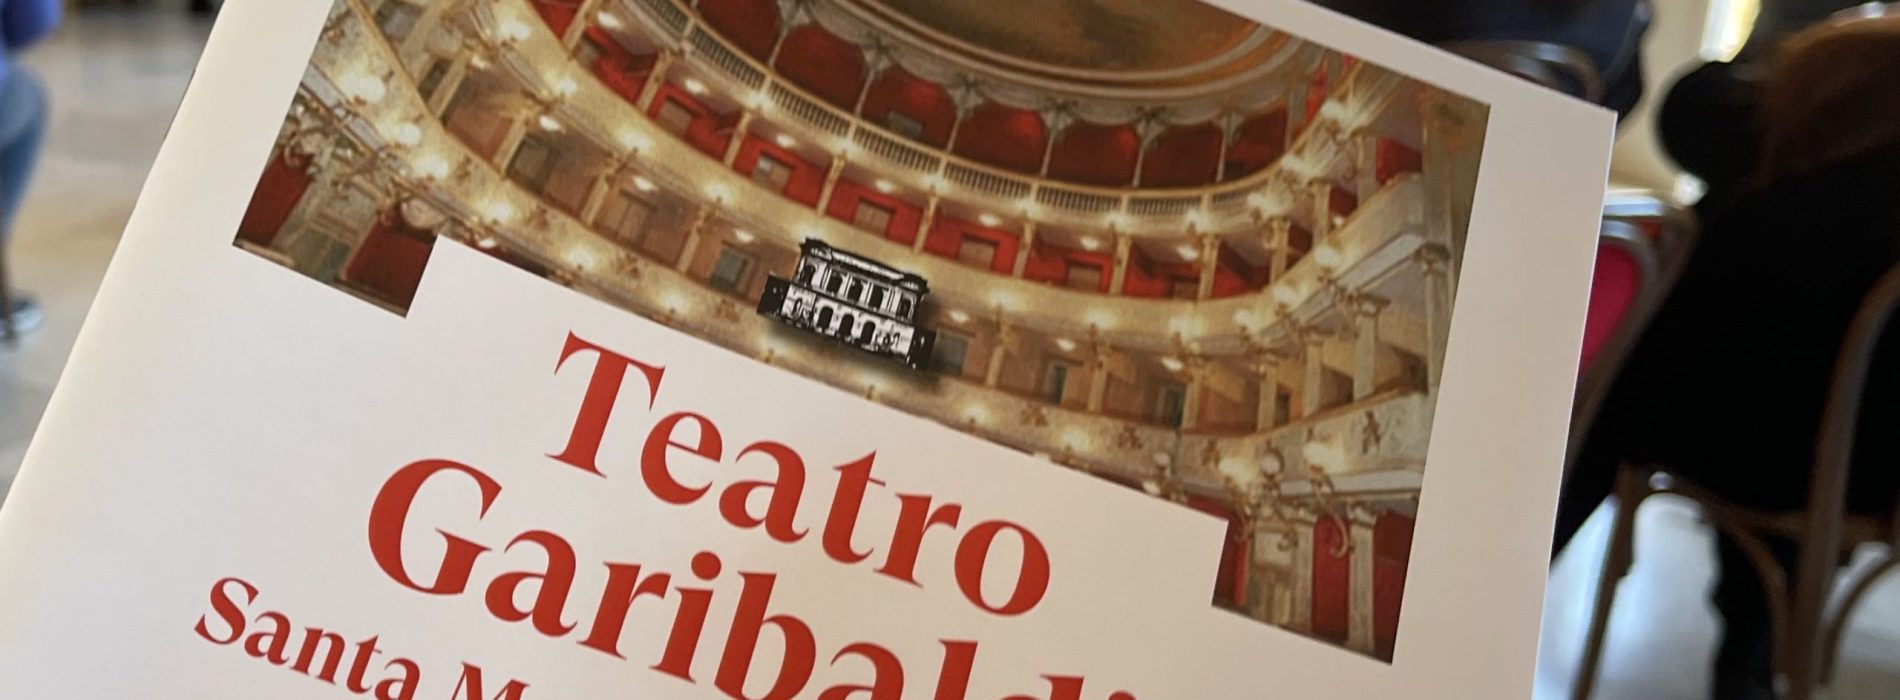 Spettacoli, al Teatro Garibaldi si presenta la nuova stagione